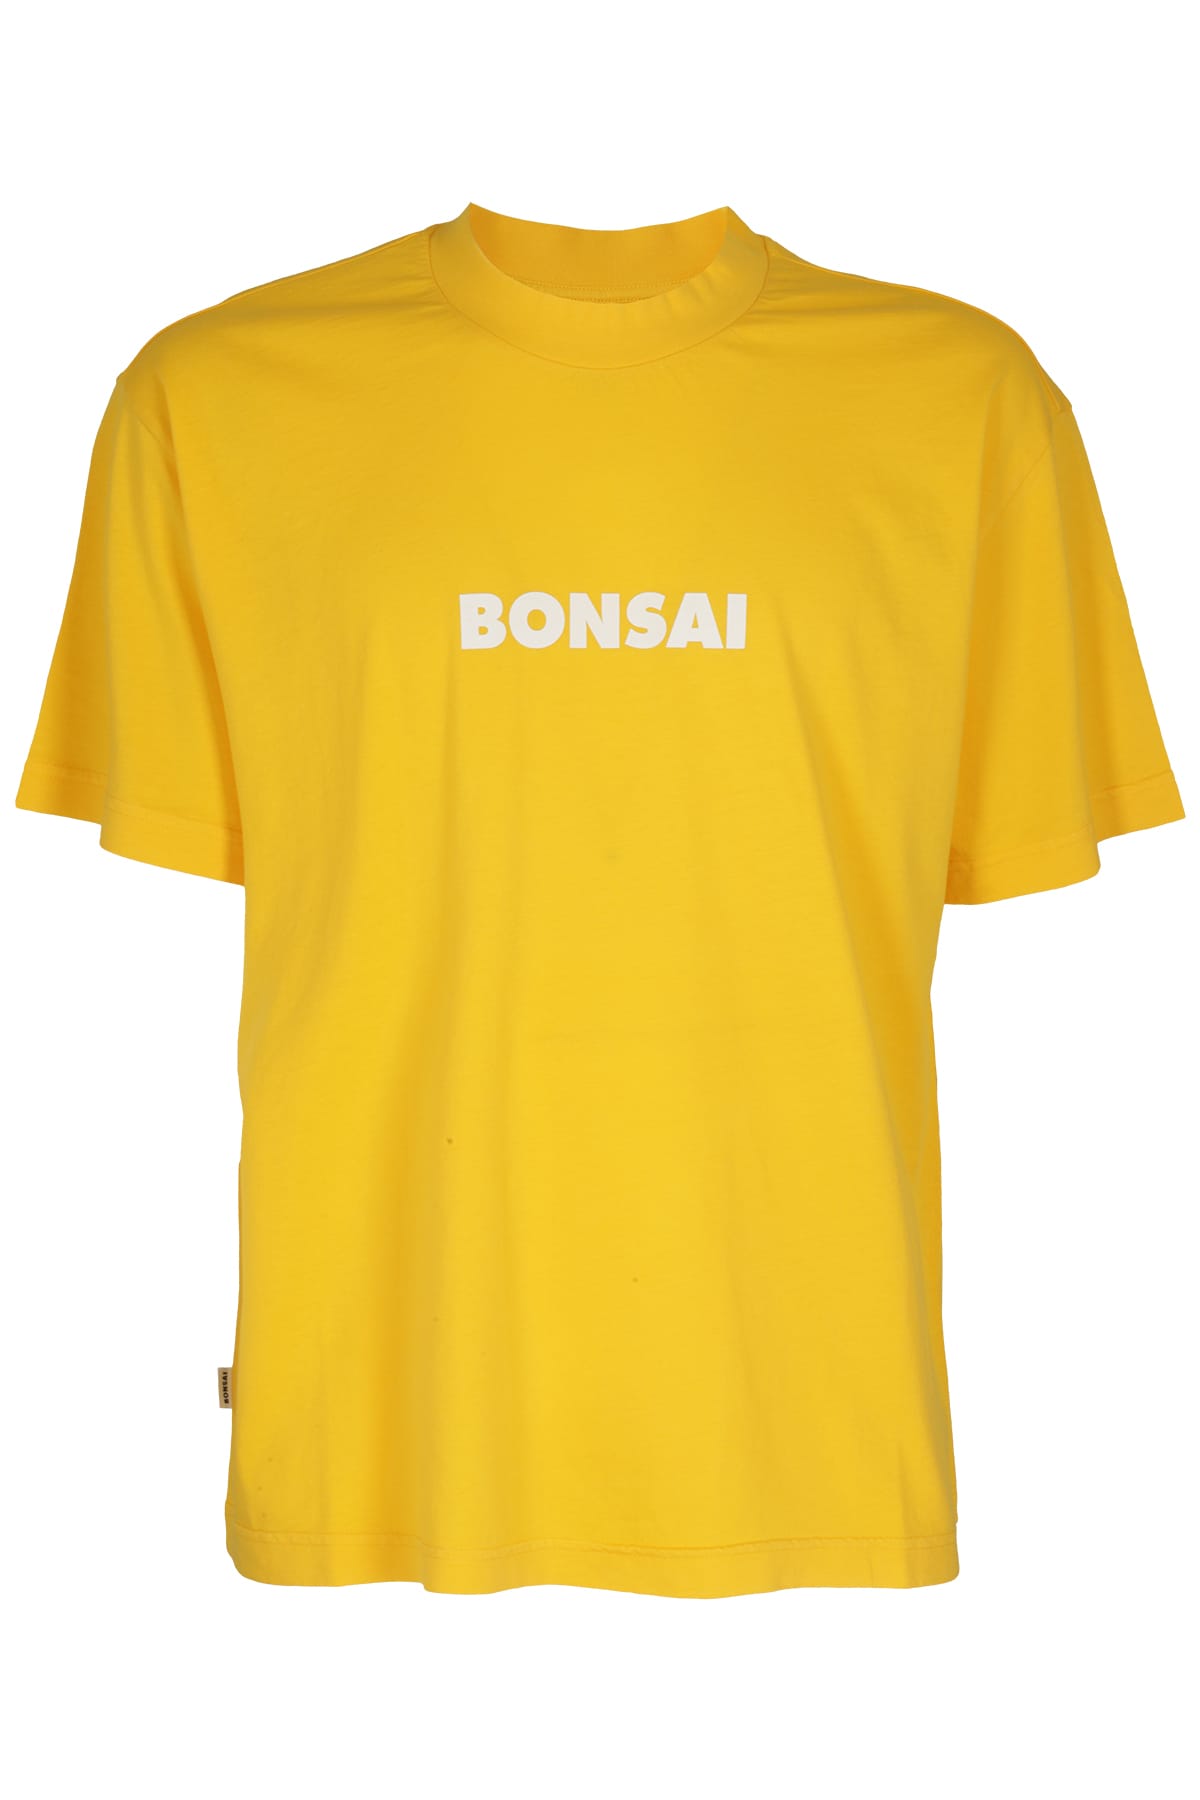 Bonsai Regular Fit Tee, Printed Classic Logo